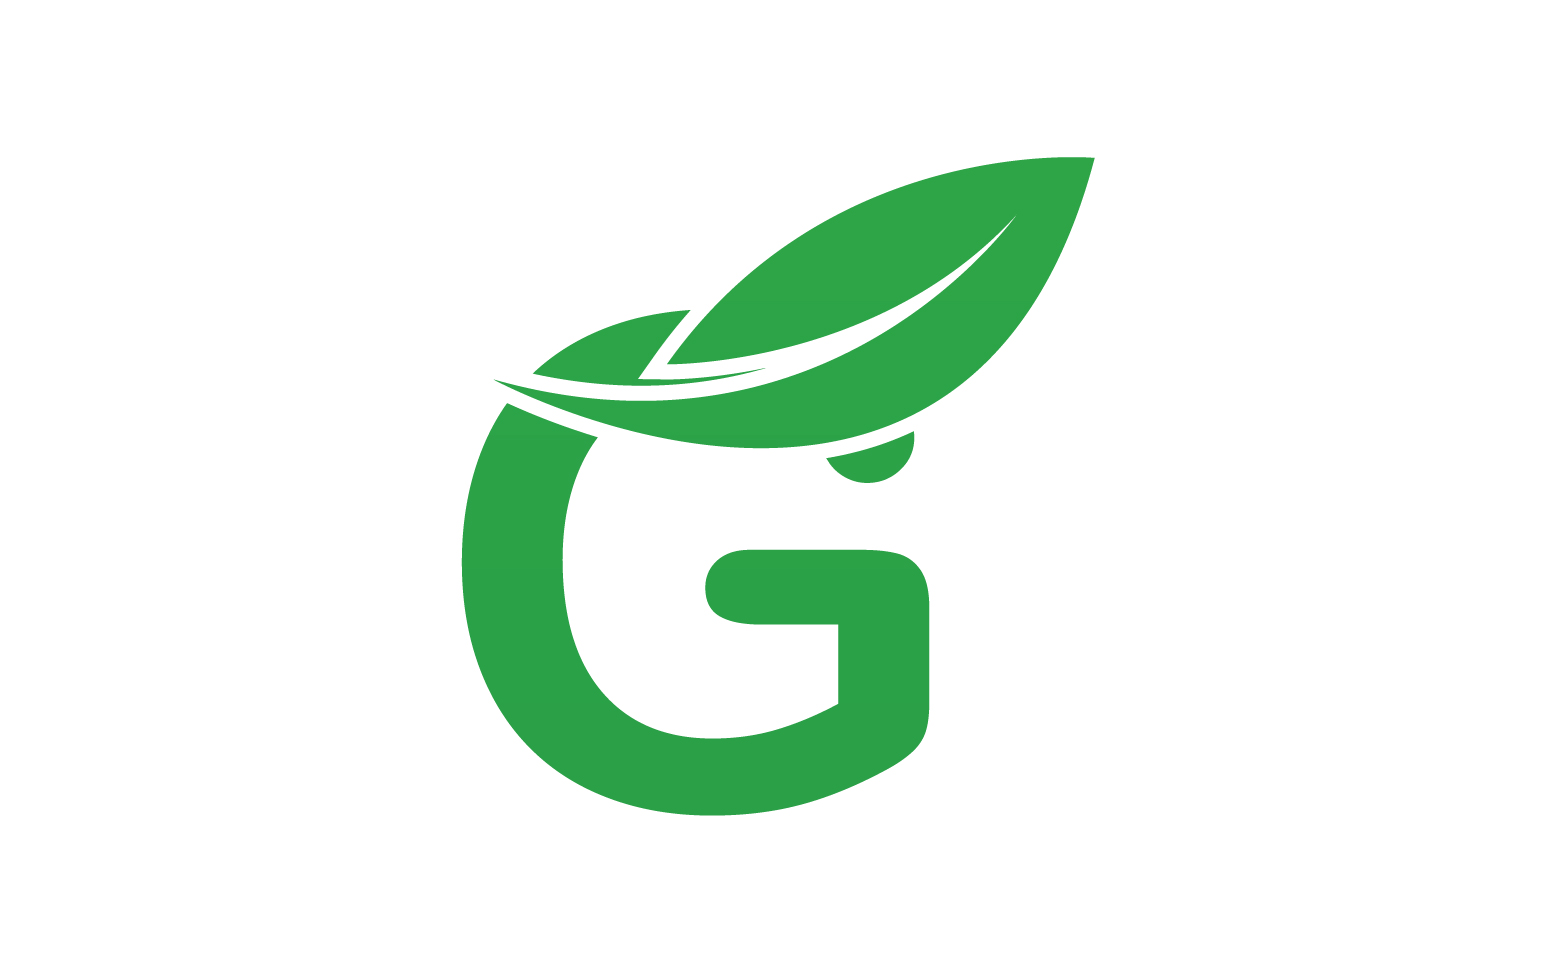 G letter leaf green logo icon version v48